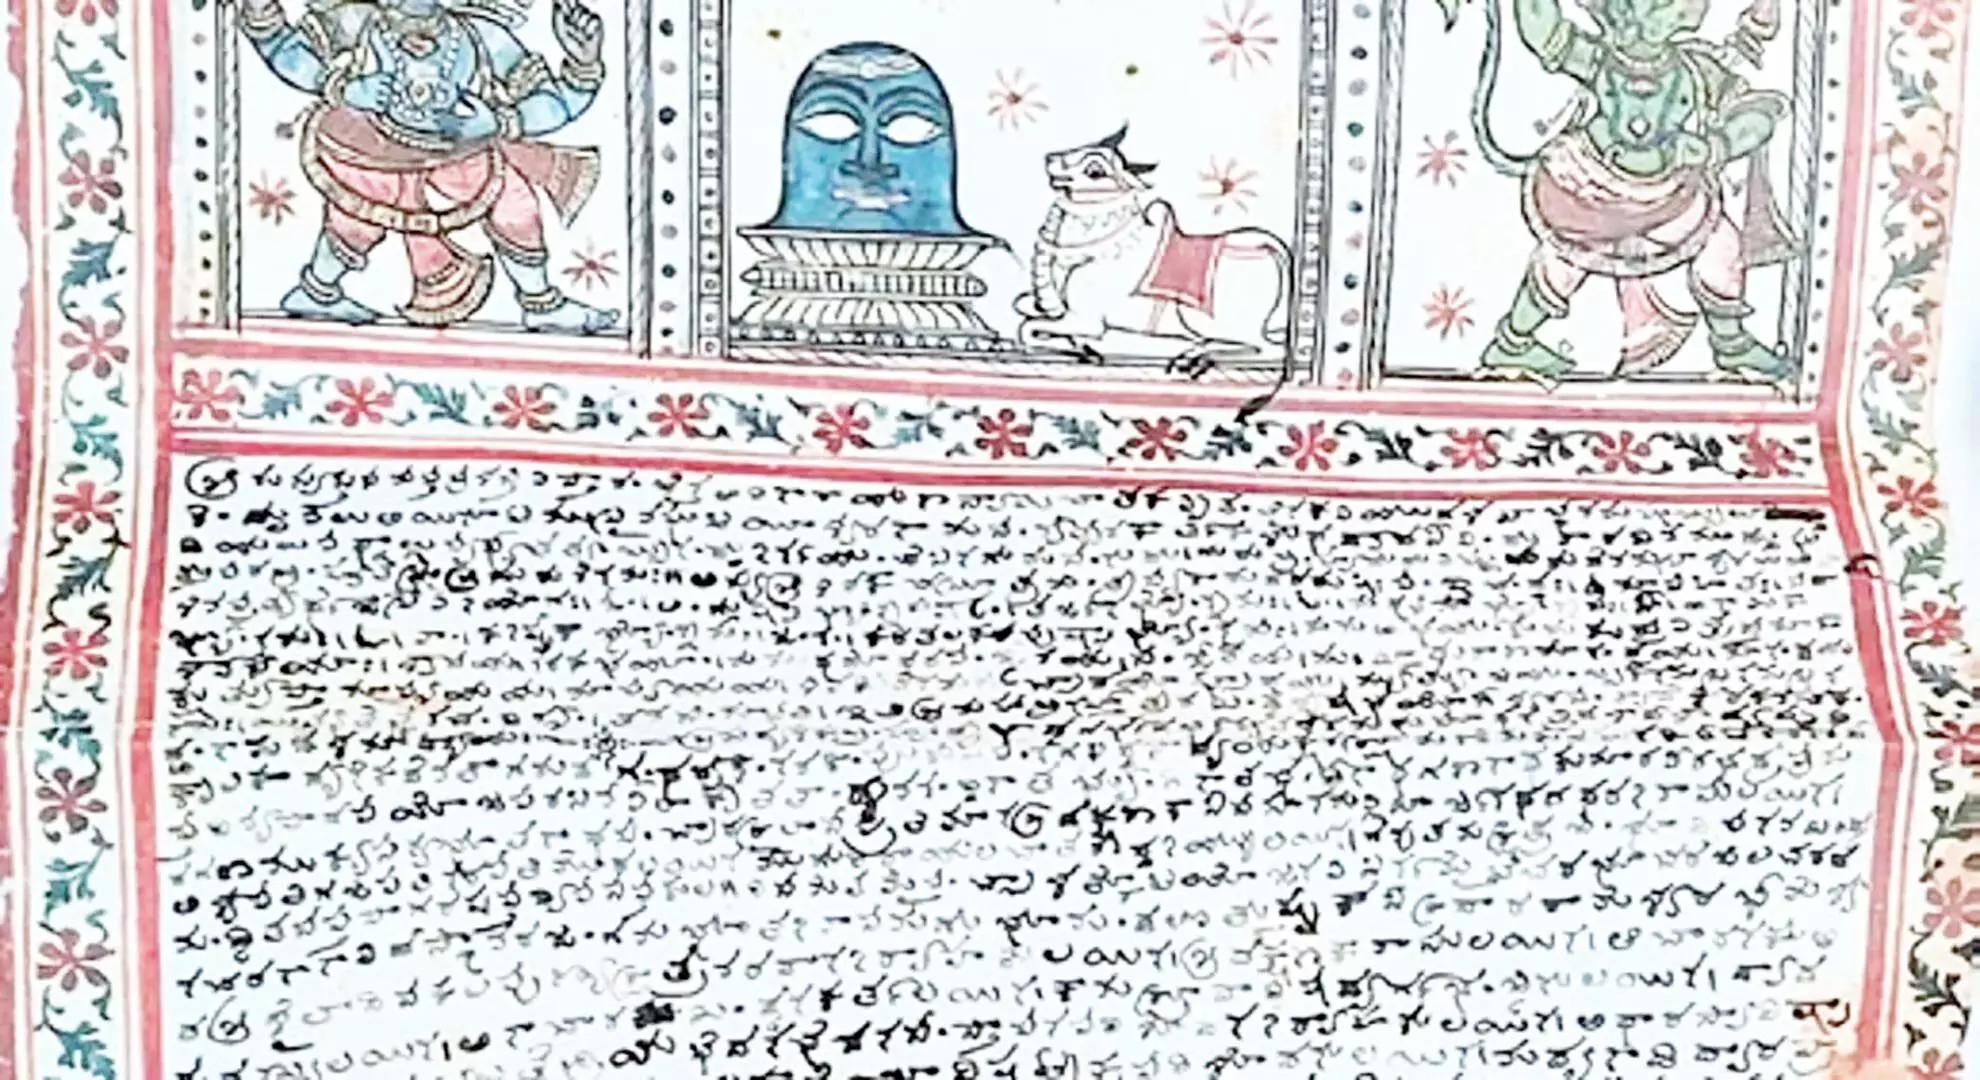 सत्य साईं जिले में 15वीं सदी के ताड़ के पत्ते की पांडुलिपियों की प्रतिकृतियां मिलीं